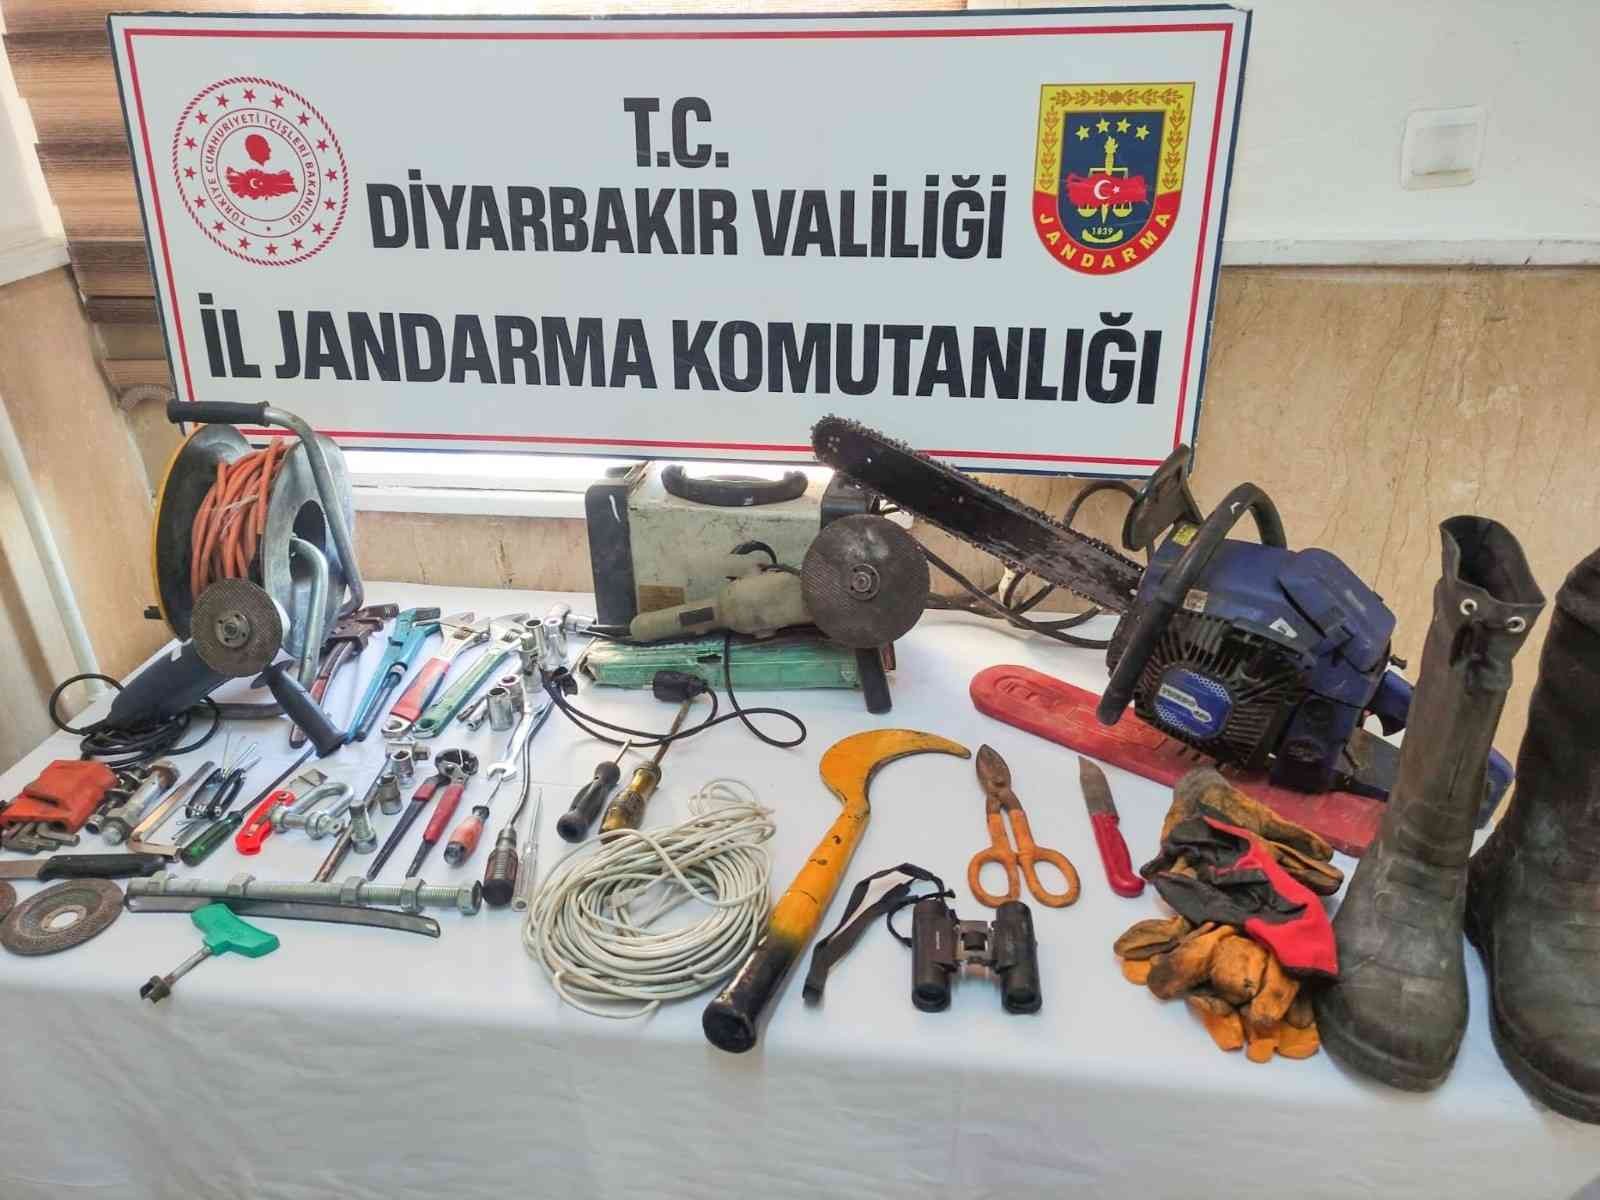 Diyarbakır’da trafo hırsızları tutuklandı #diyarbakir